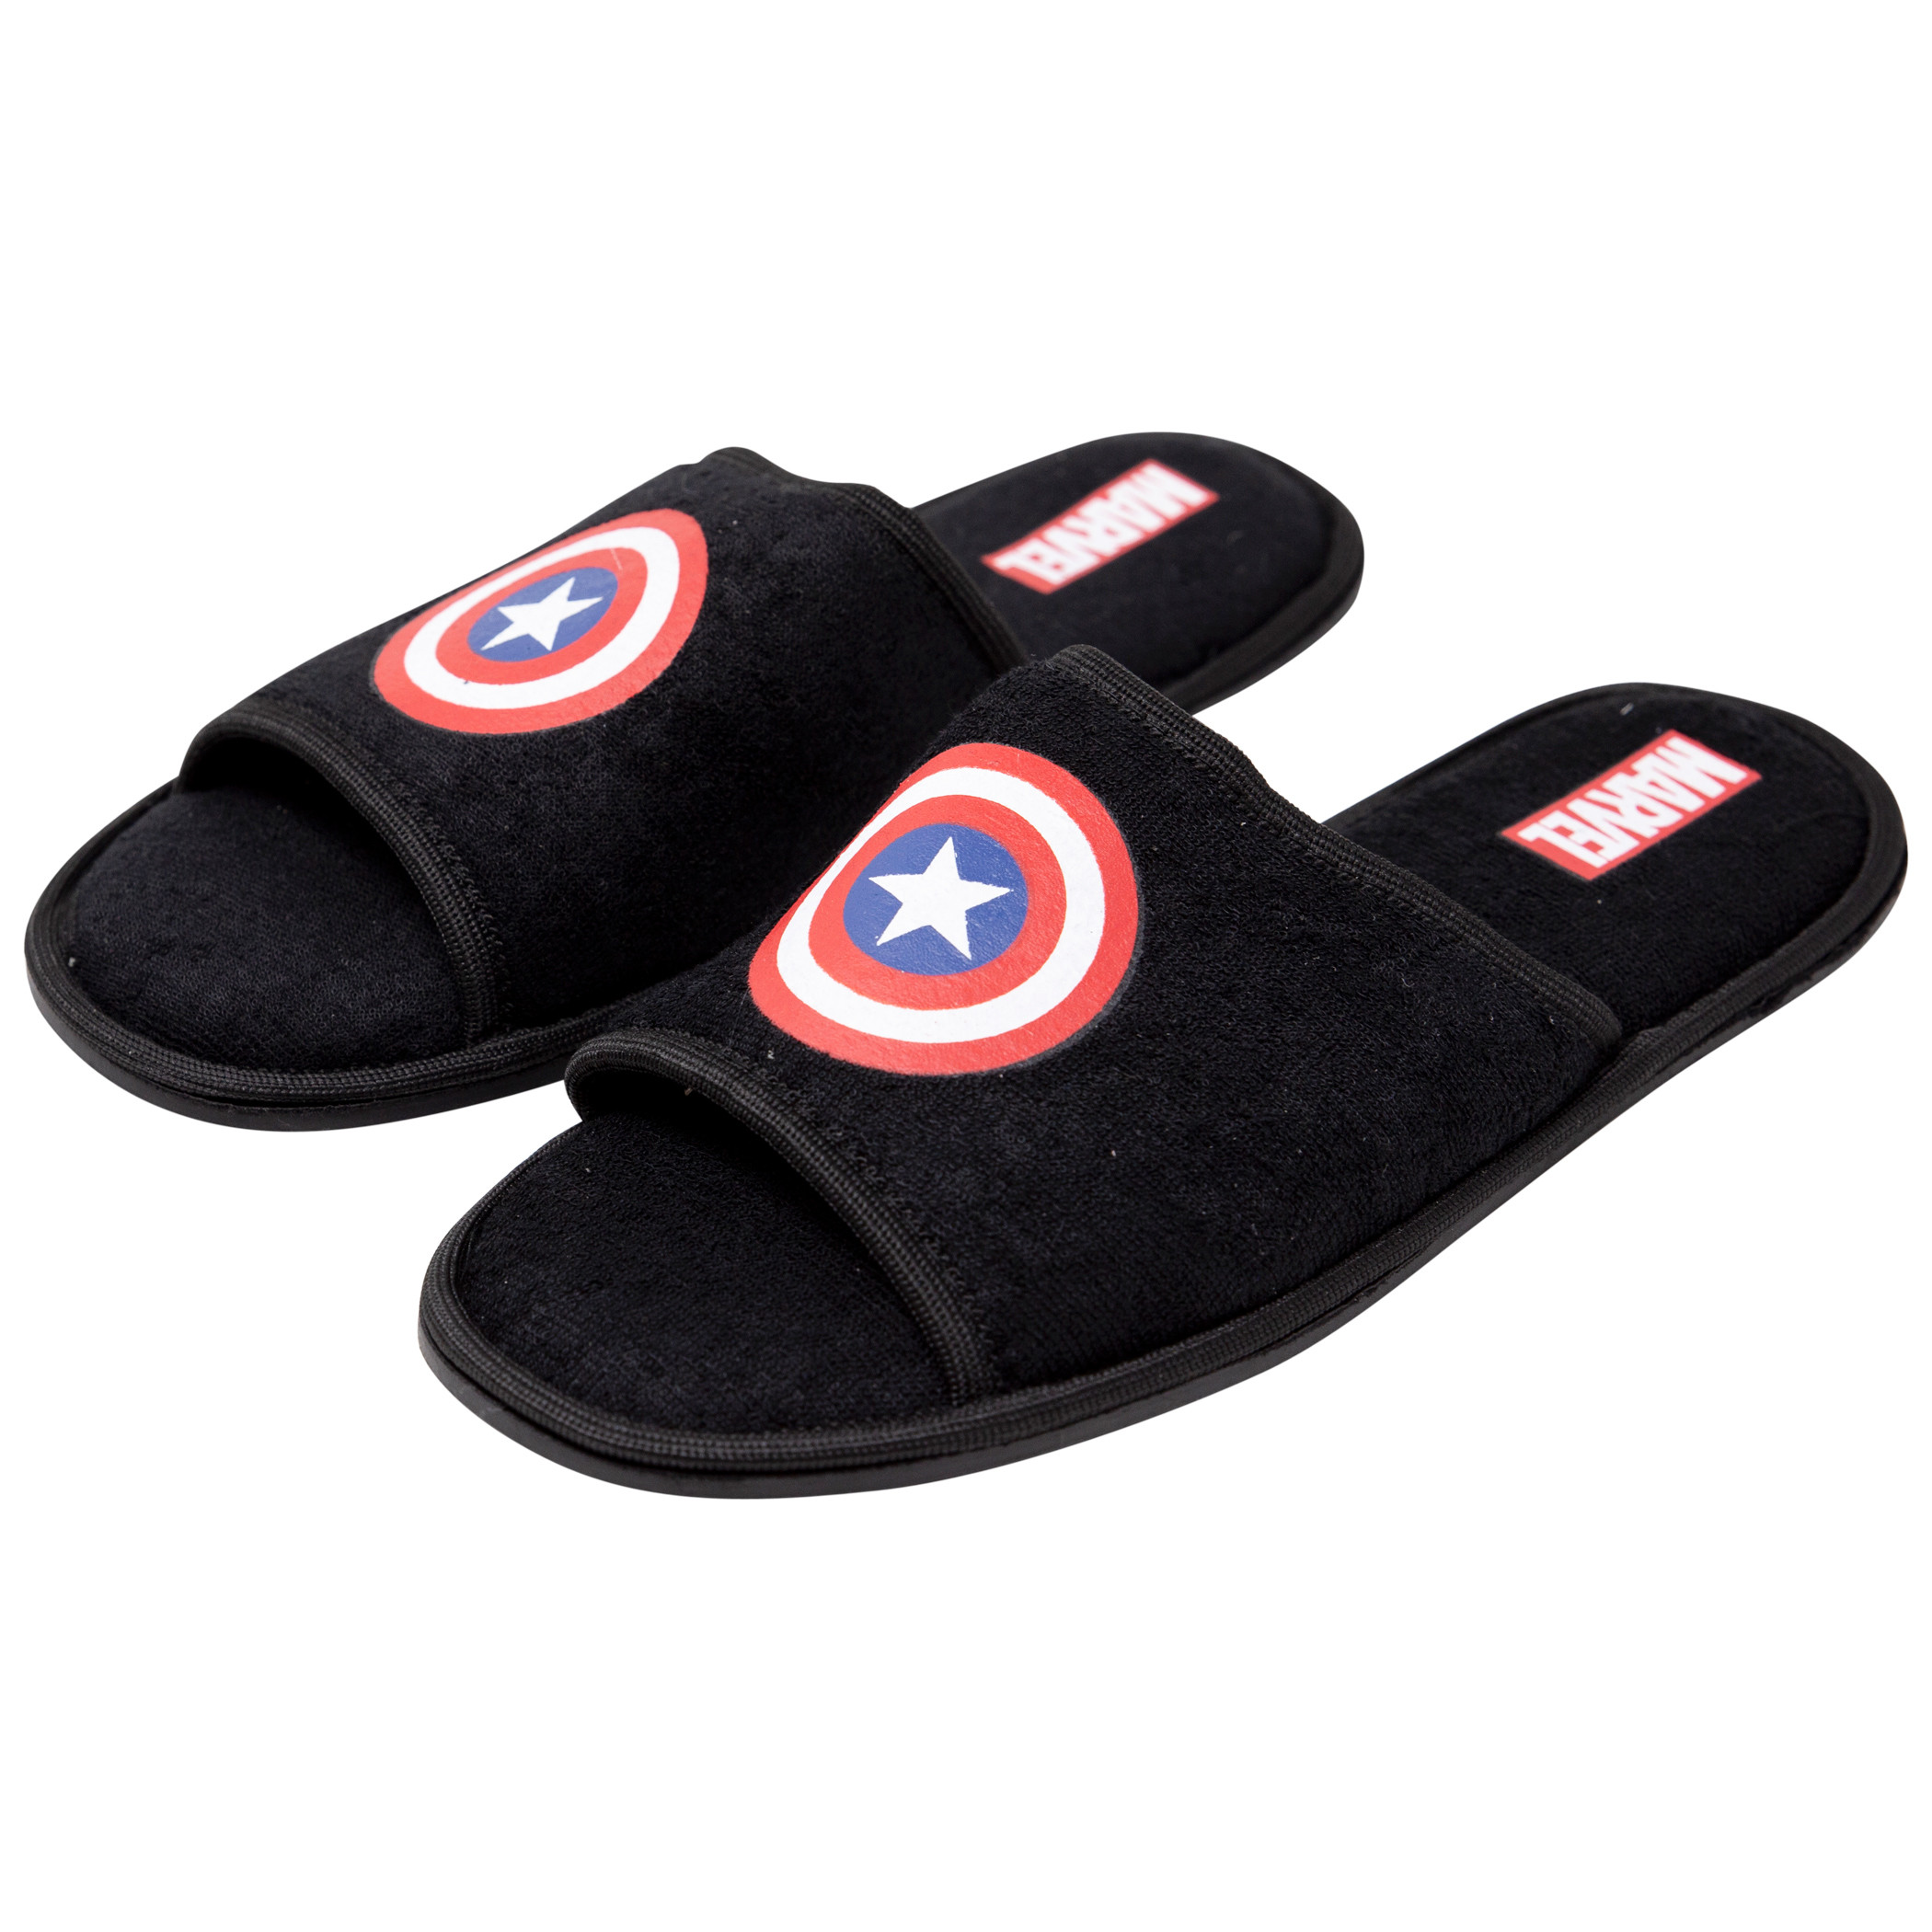 Captain America Slide Sandals